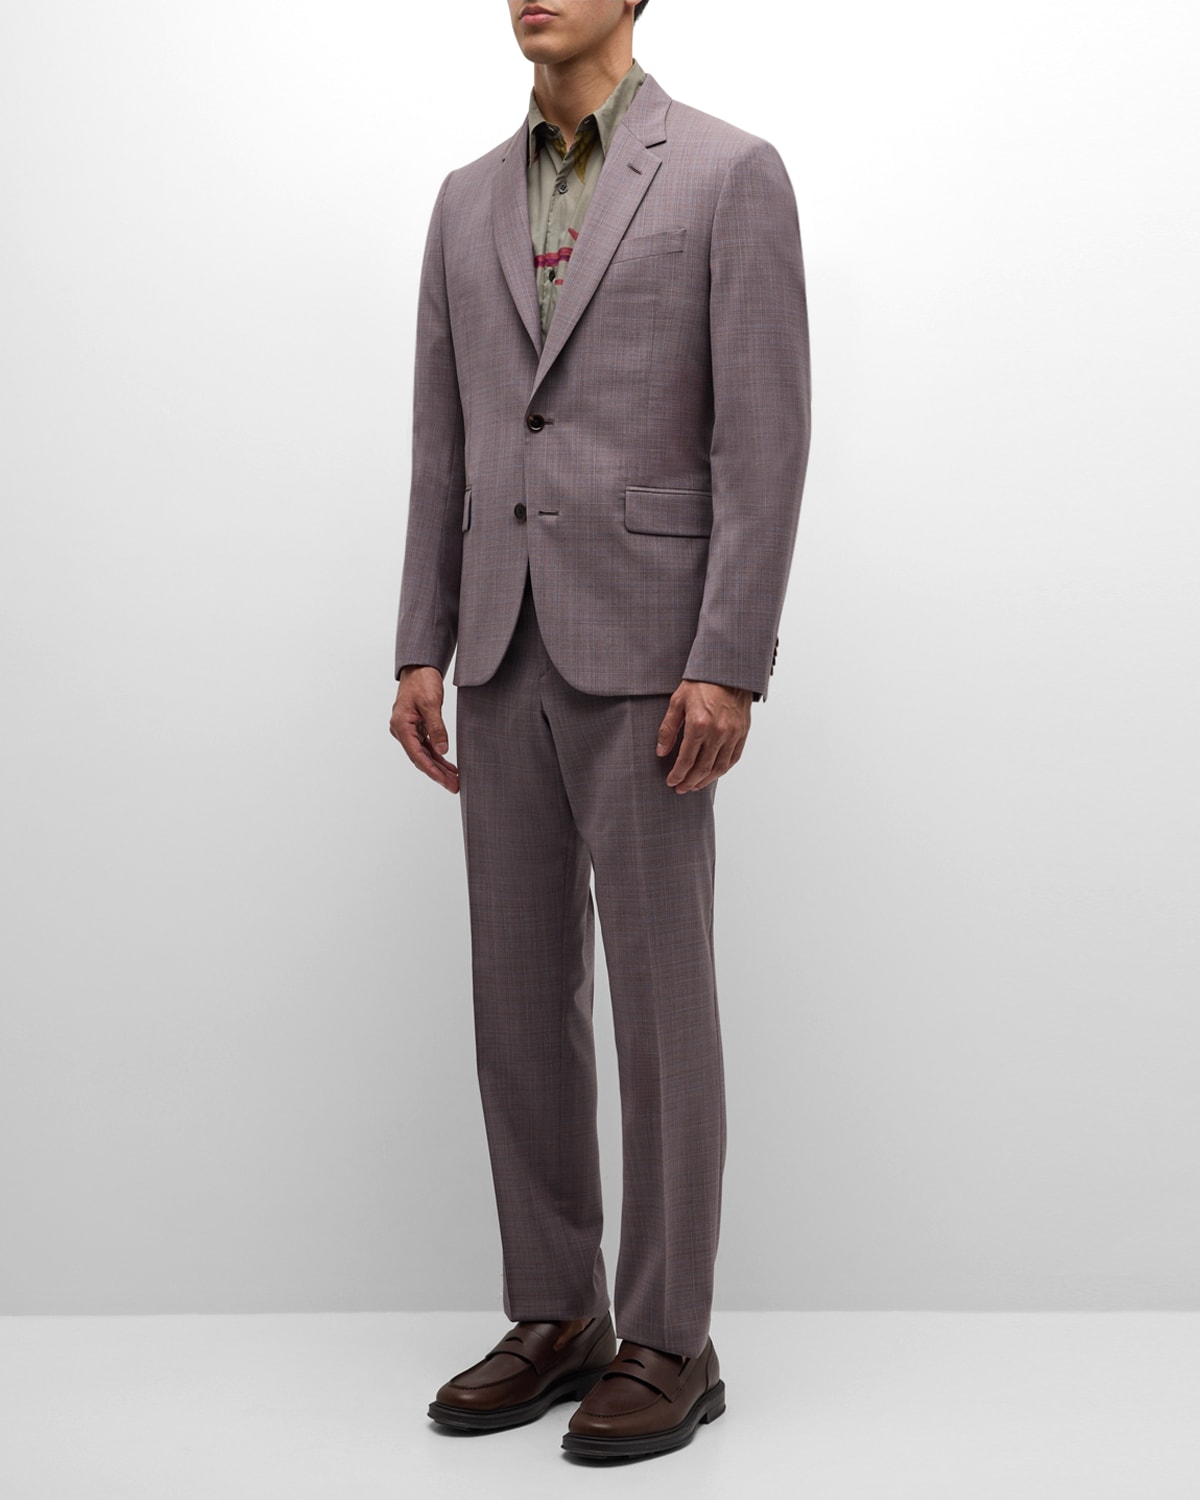 Paul Smith Men's Melange Plaid Suit In Grey/purple